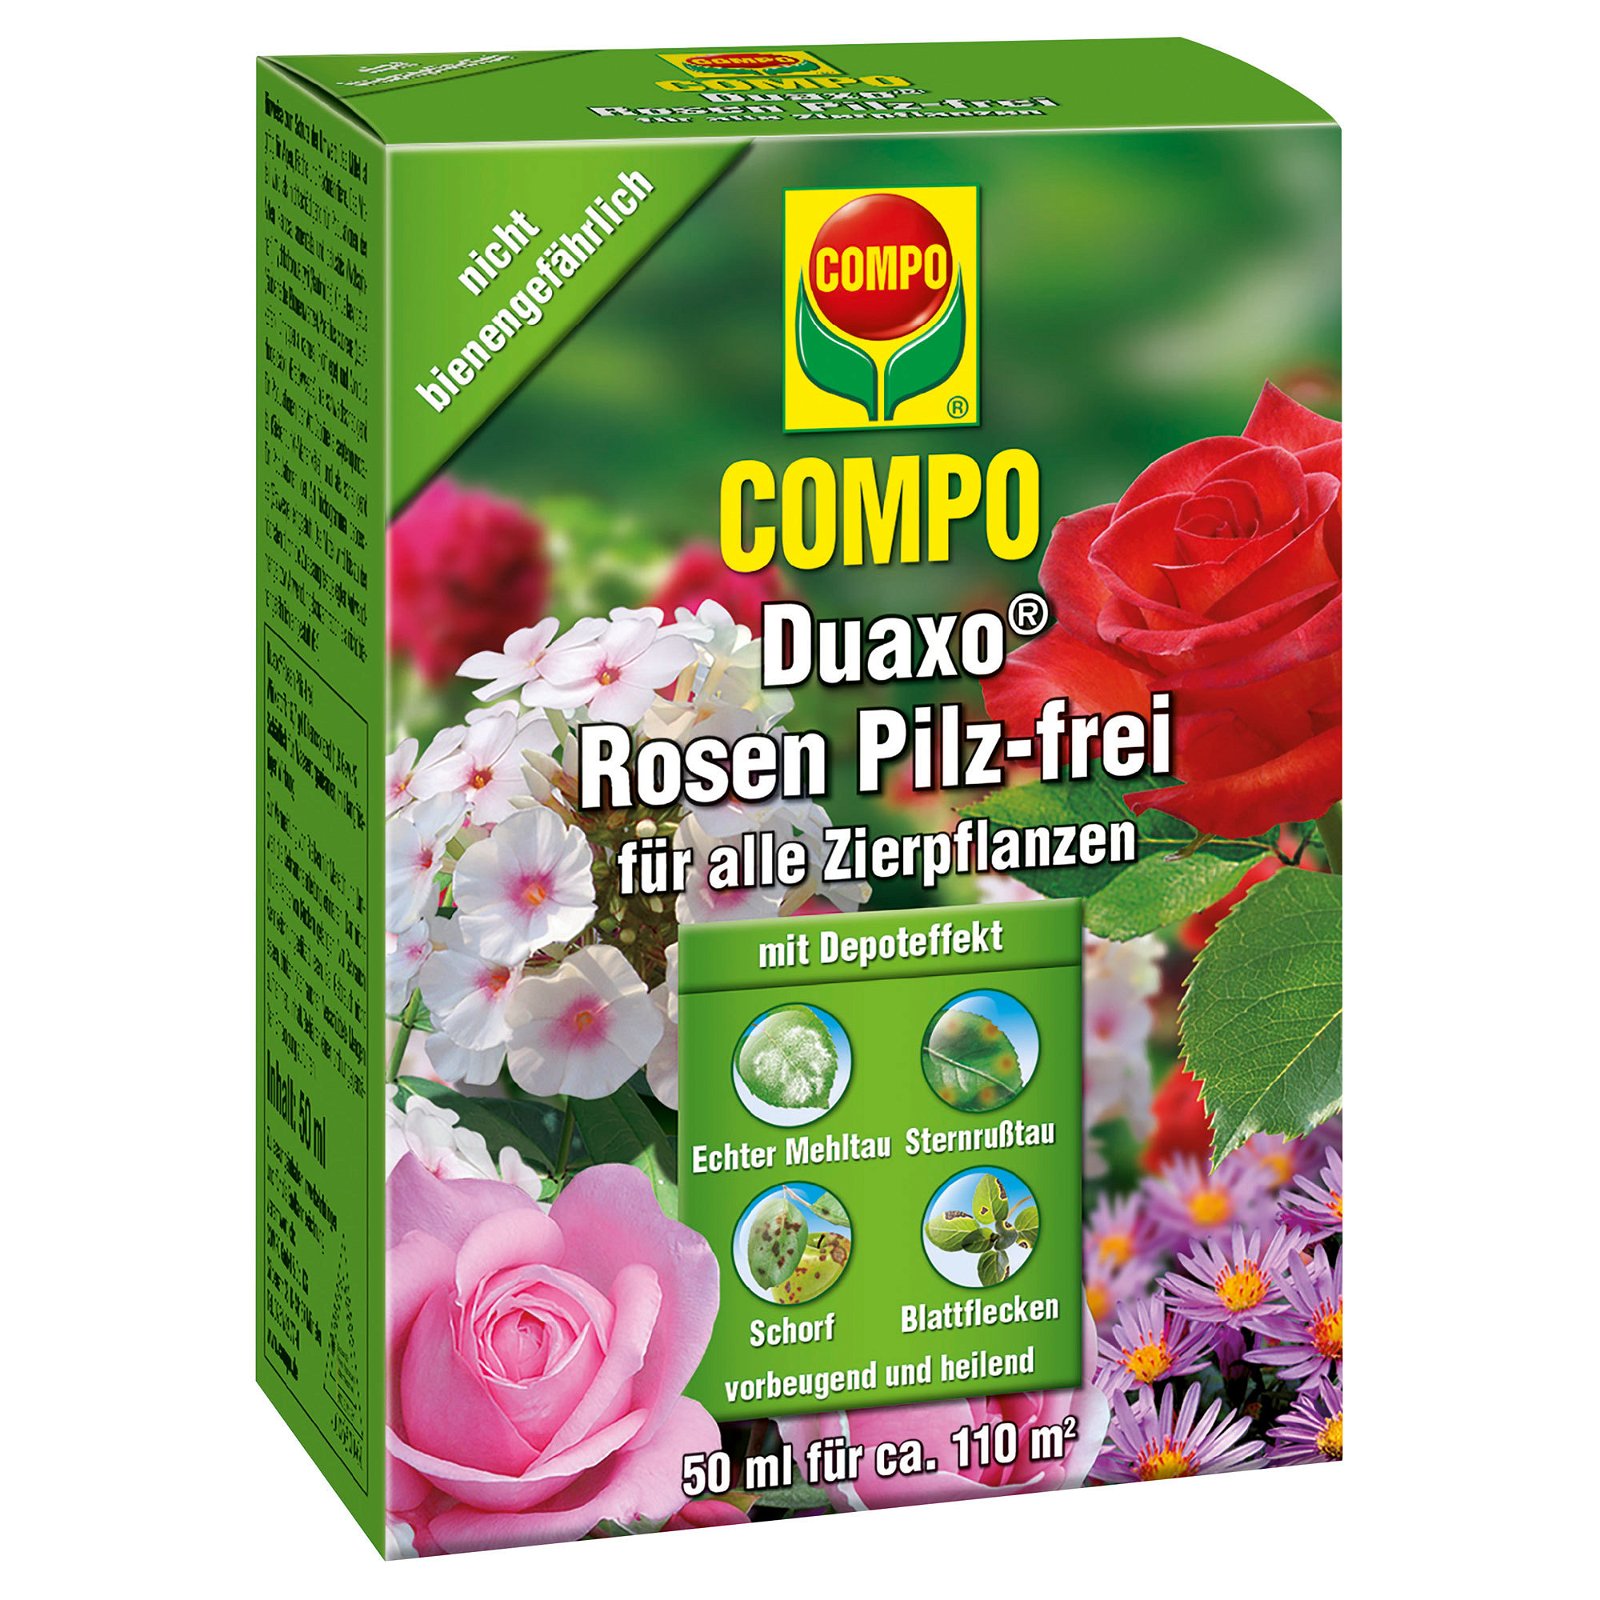 Compo Duaxo Rosen Pilzfrei für alle Zierpflanzen, 50 ml